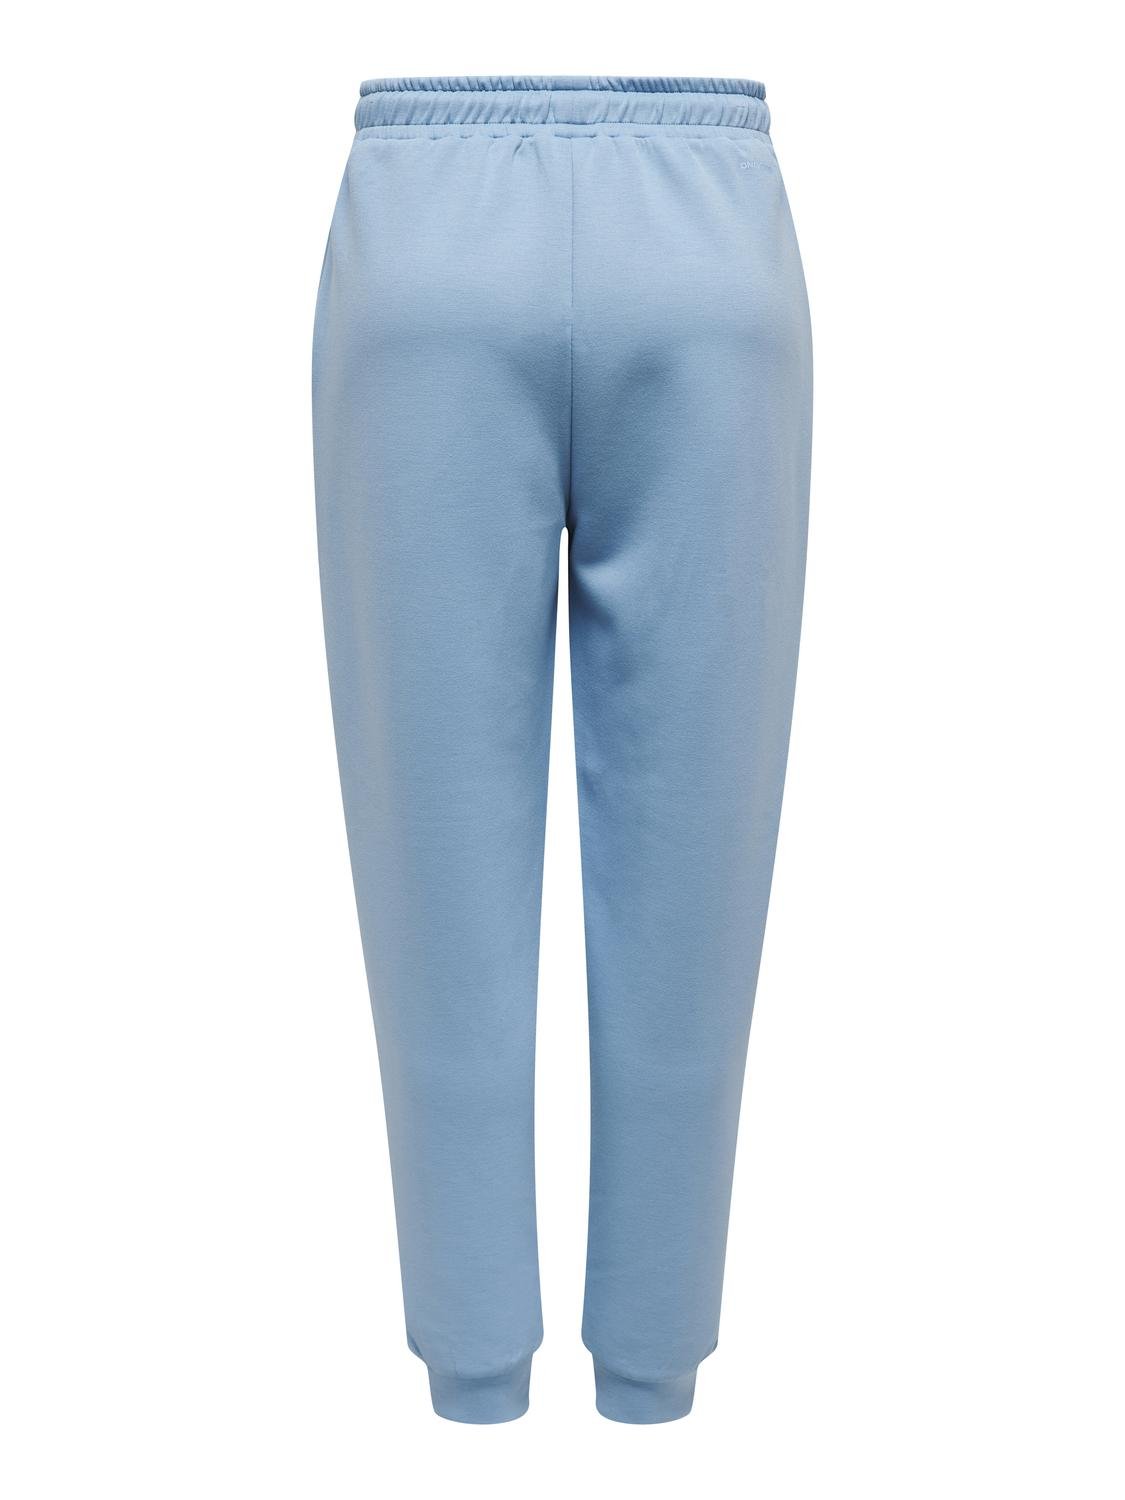 ONLY Normal geschnitten Hohe Taille Anliegende Bündchen Hose -Blissful Blue - 15230209